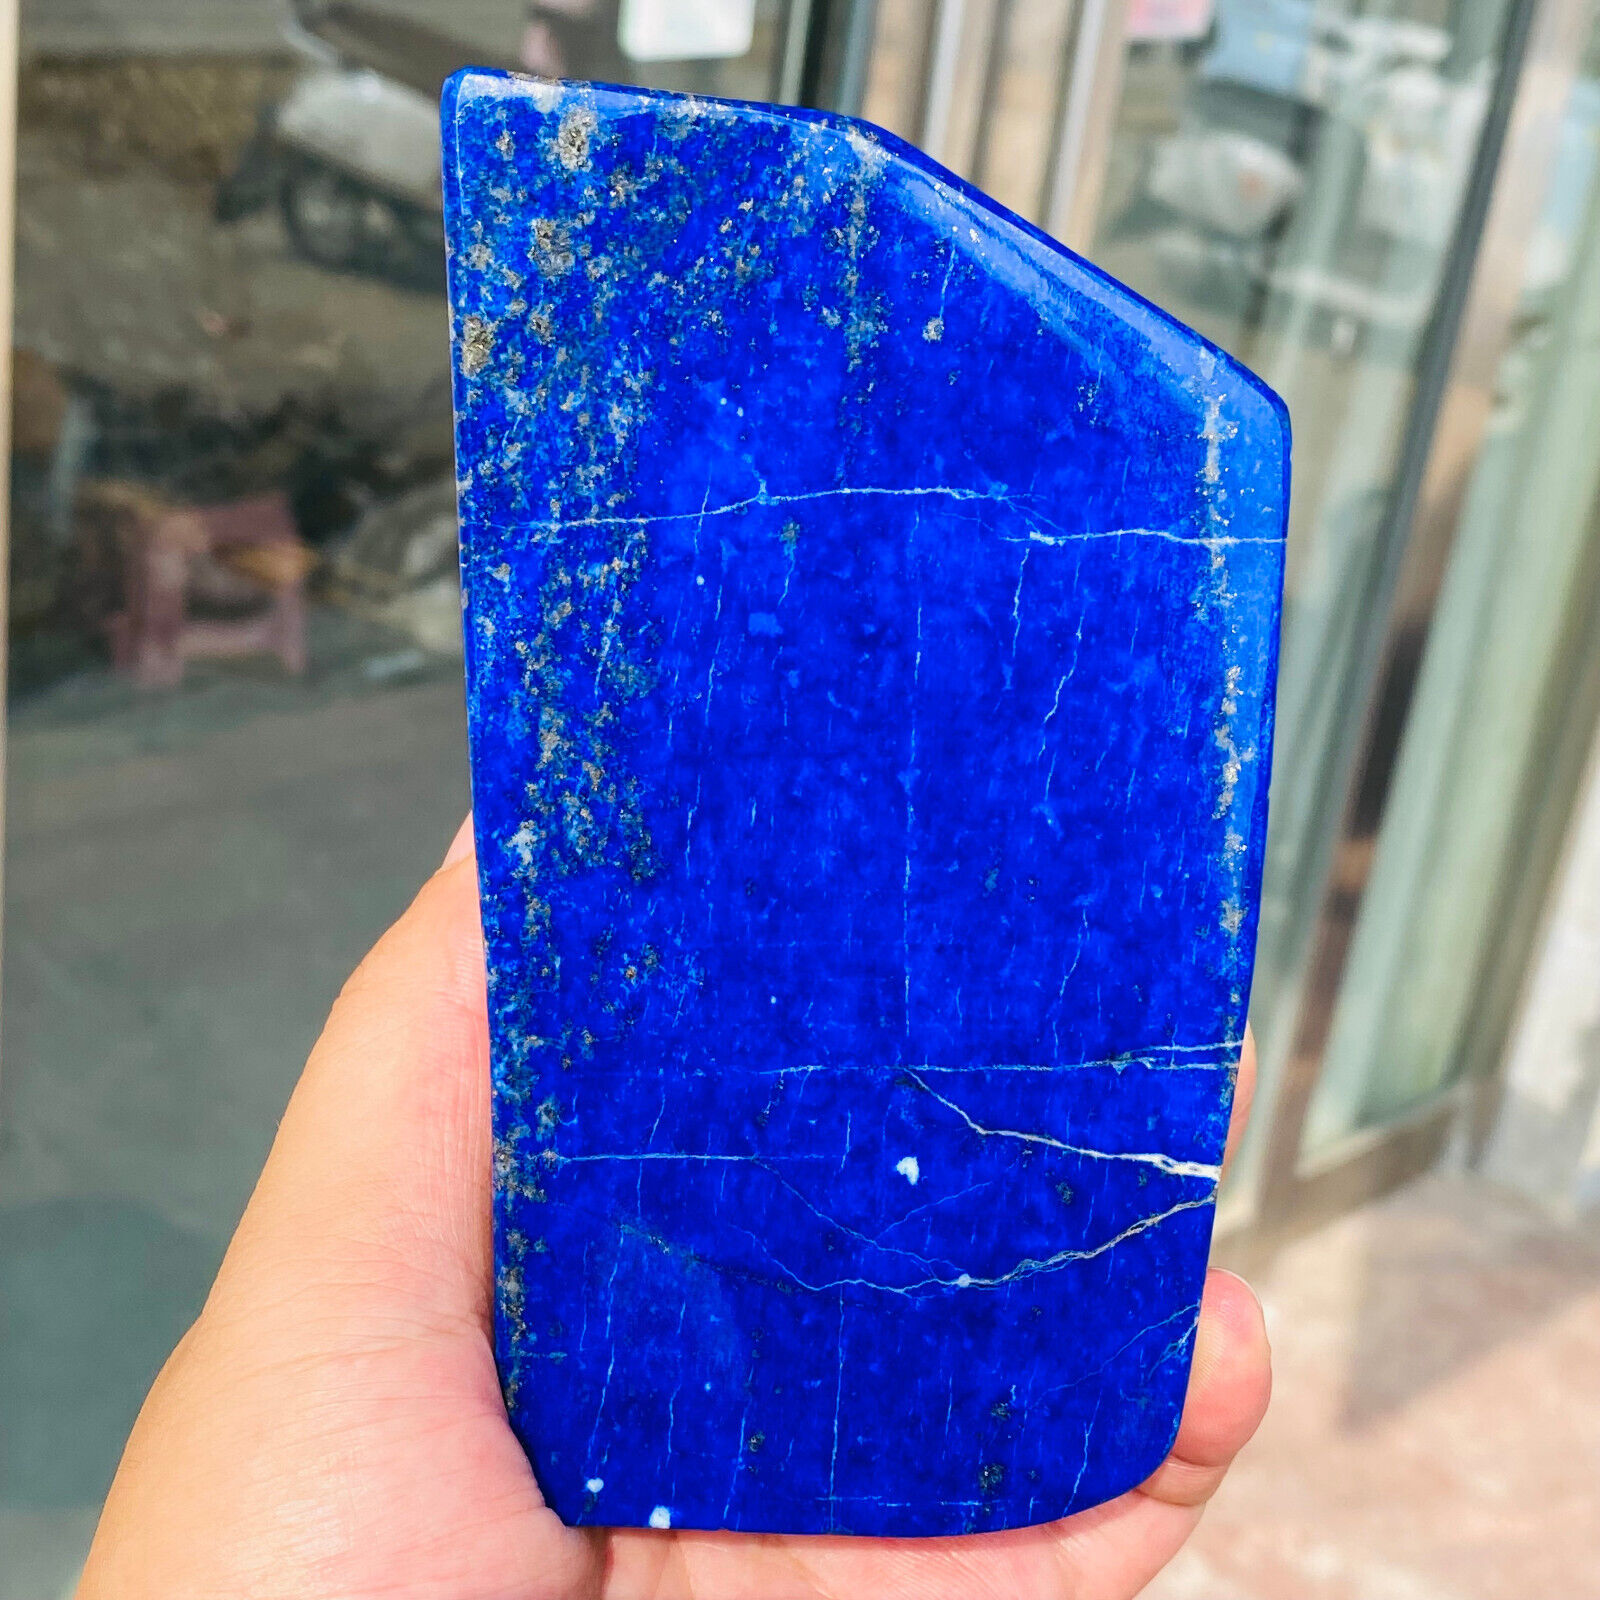 693g Large Lapis Lazuli Freeform Gemstone Polished Rough Display Specimen